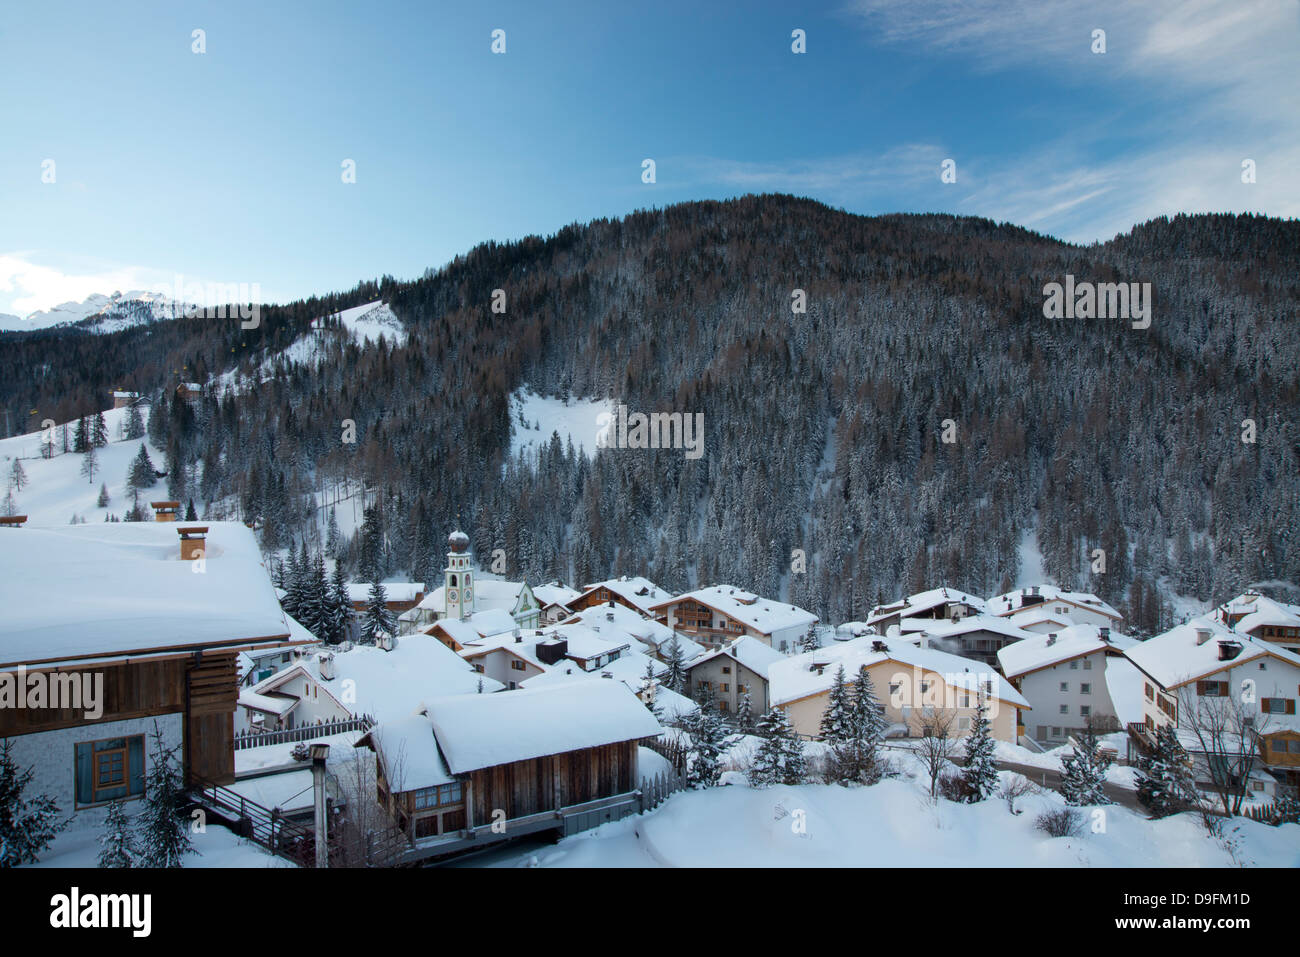 Un matin tôt vue de toits couverts de neige à San Cassiano près du domaine skiable Alta Badia, Dolomites, Tyrol du Sud, Italie Banque D'Images